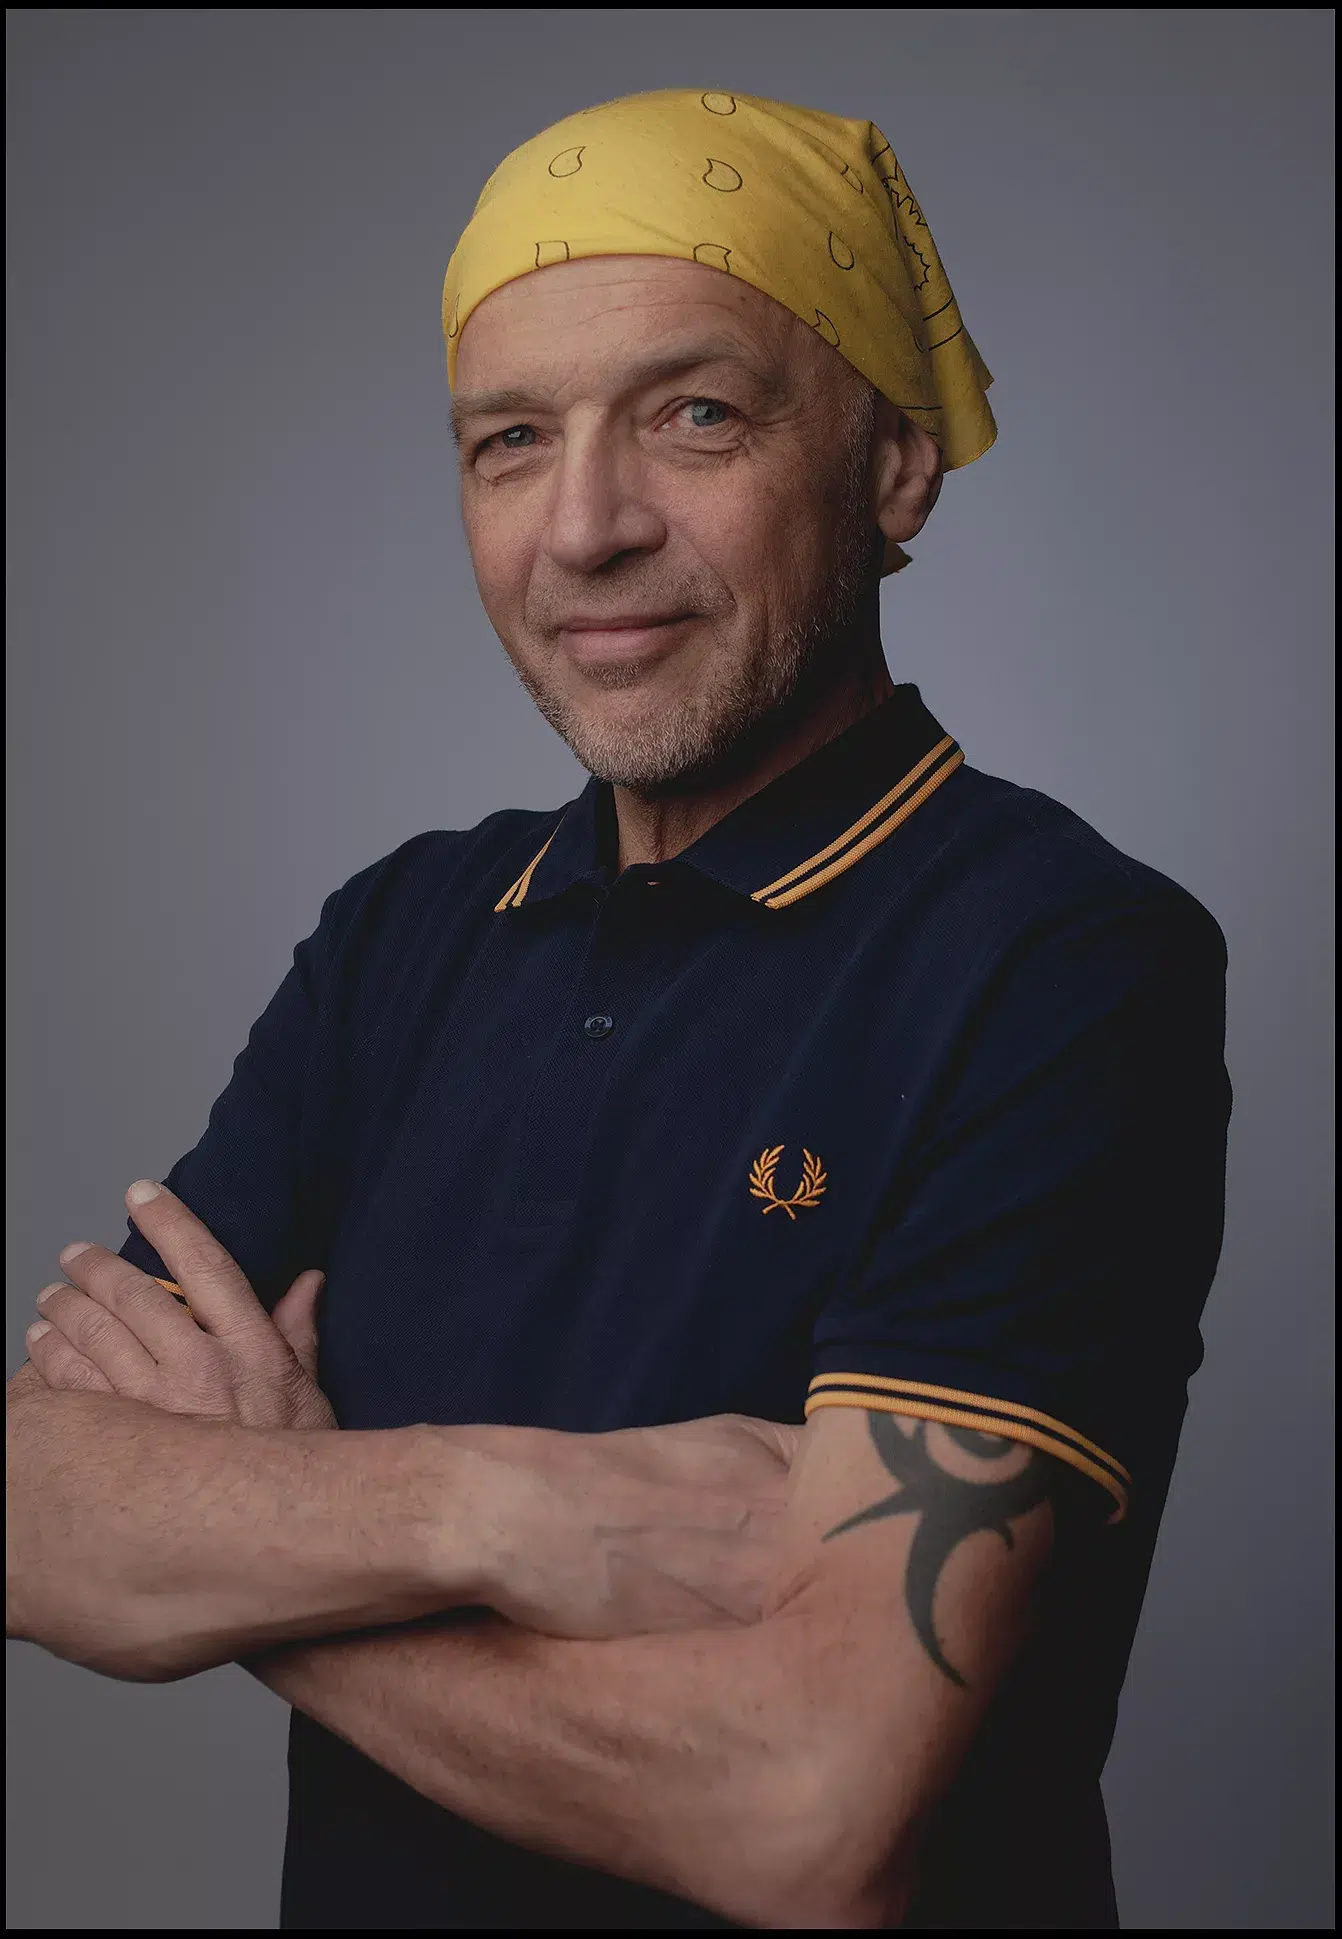 Portrait Fotoshooting Mann mittleren Alter im gelben bandana